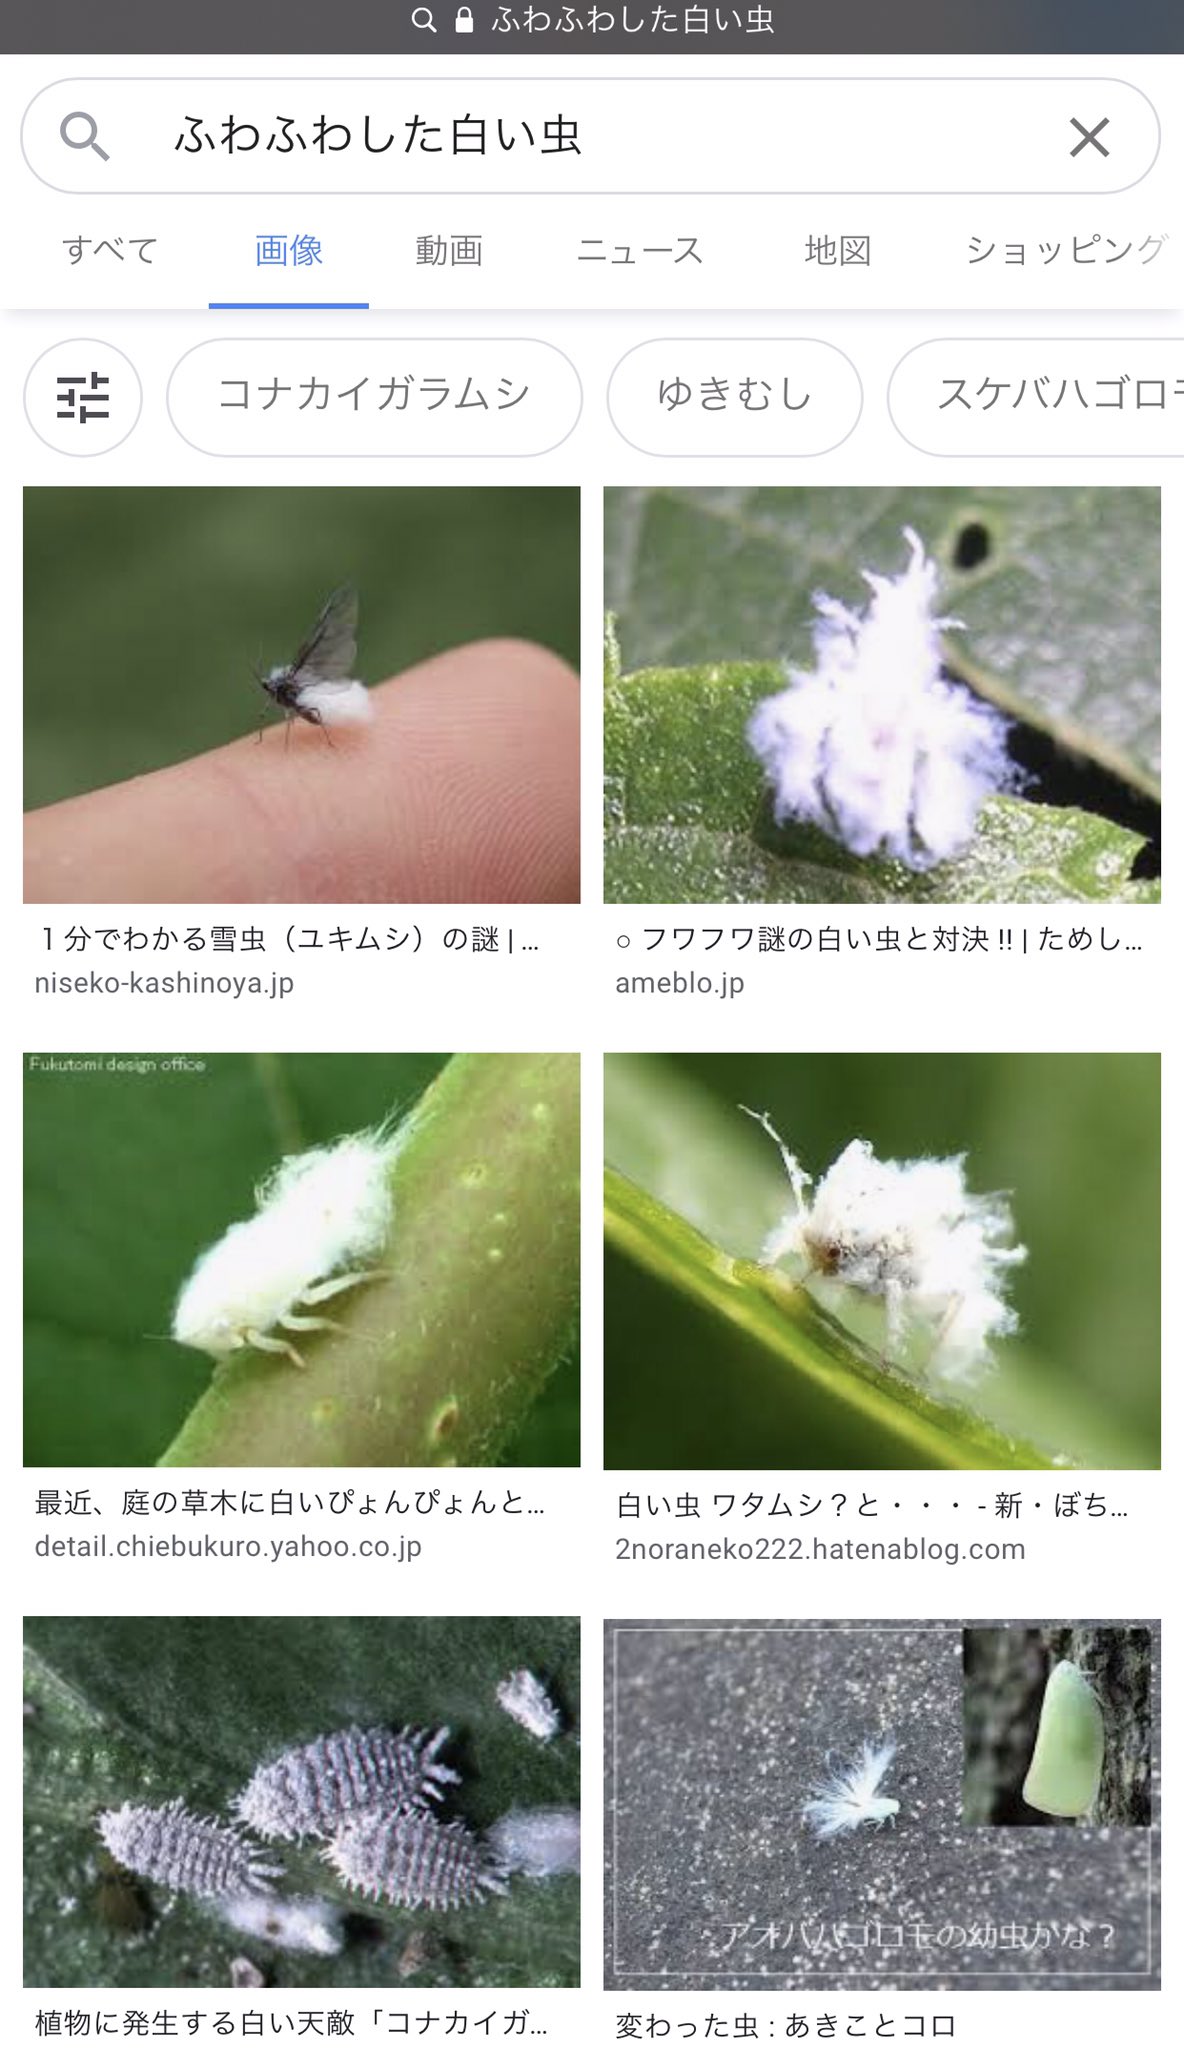 赤松崇麿 Akamatsu Takamaro そういえば日中 白いふわふわした小さな虫が何匹も飛んでいたなと思って ふわふわ した白い虫 でググったら 思ったほど可愛くなかった T Co Wvcmfsolar Twitter